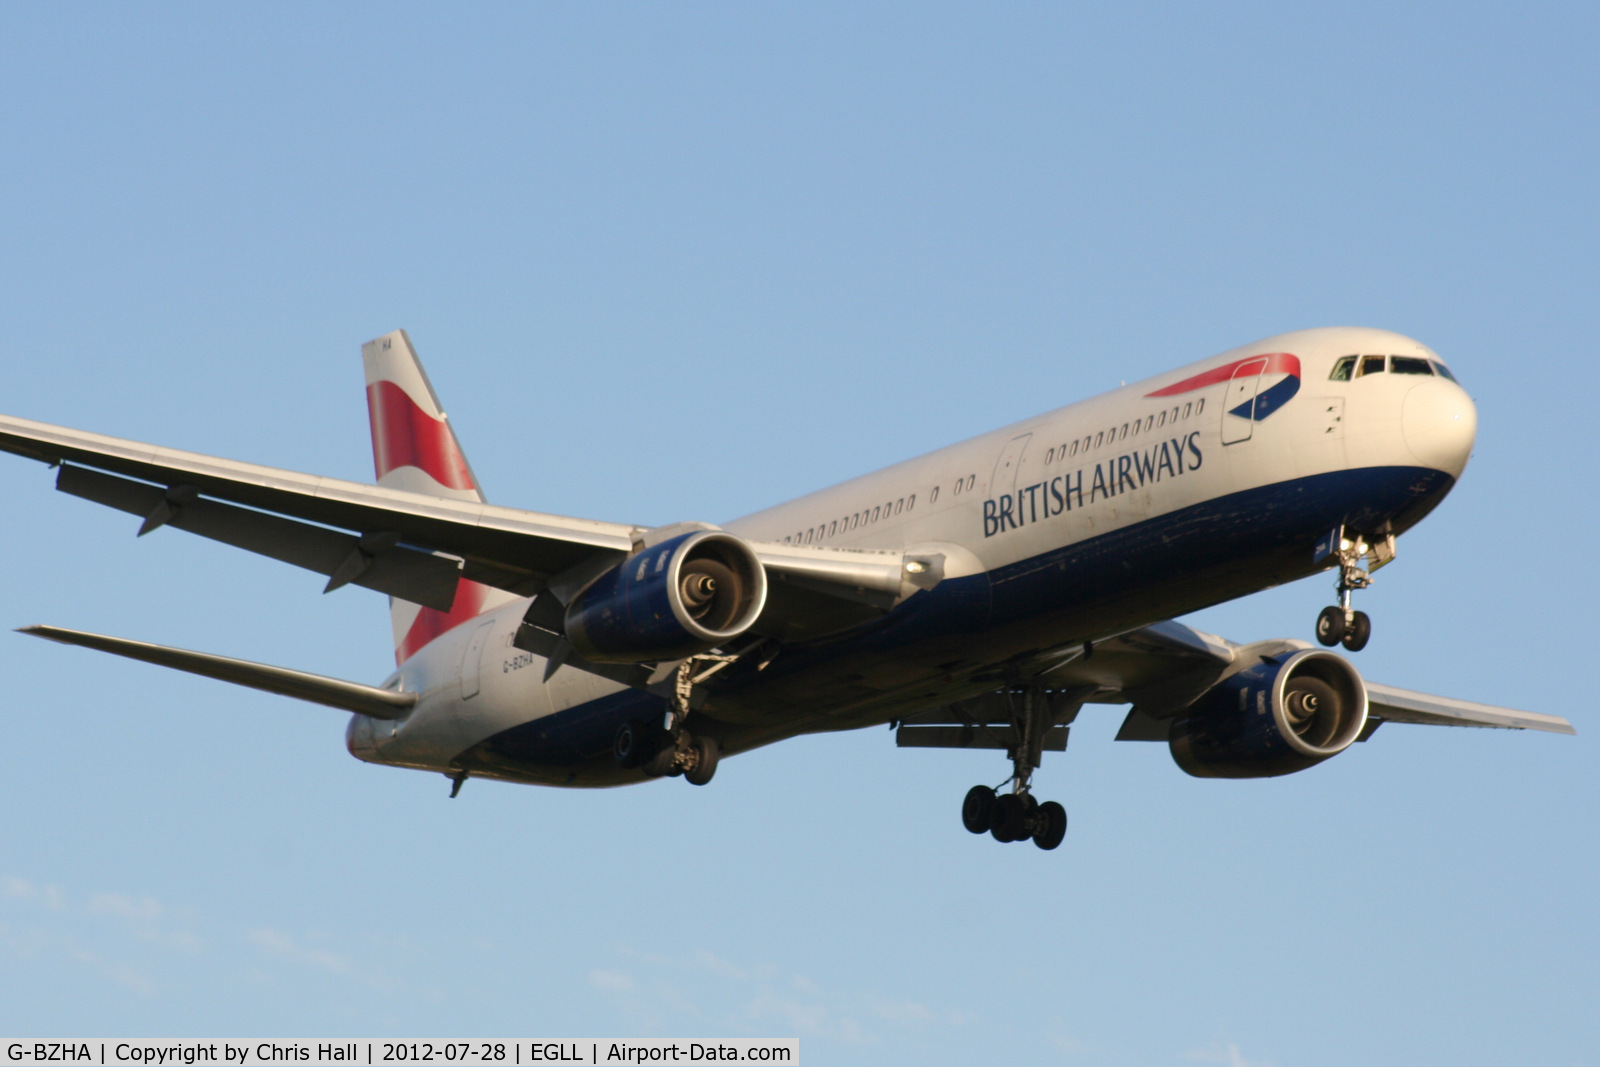 G-BZHA, 1998 Boeing 767-336 C/N 29230, British Airways